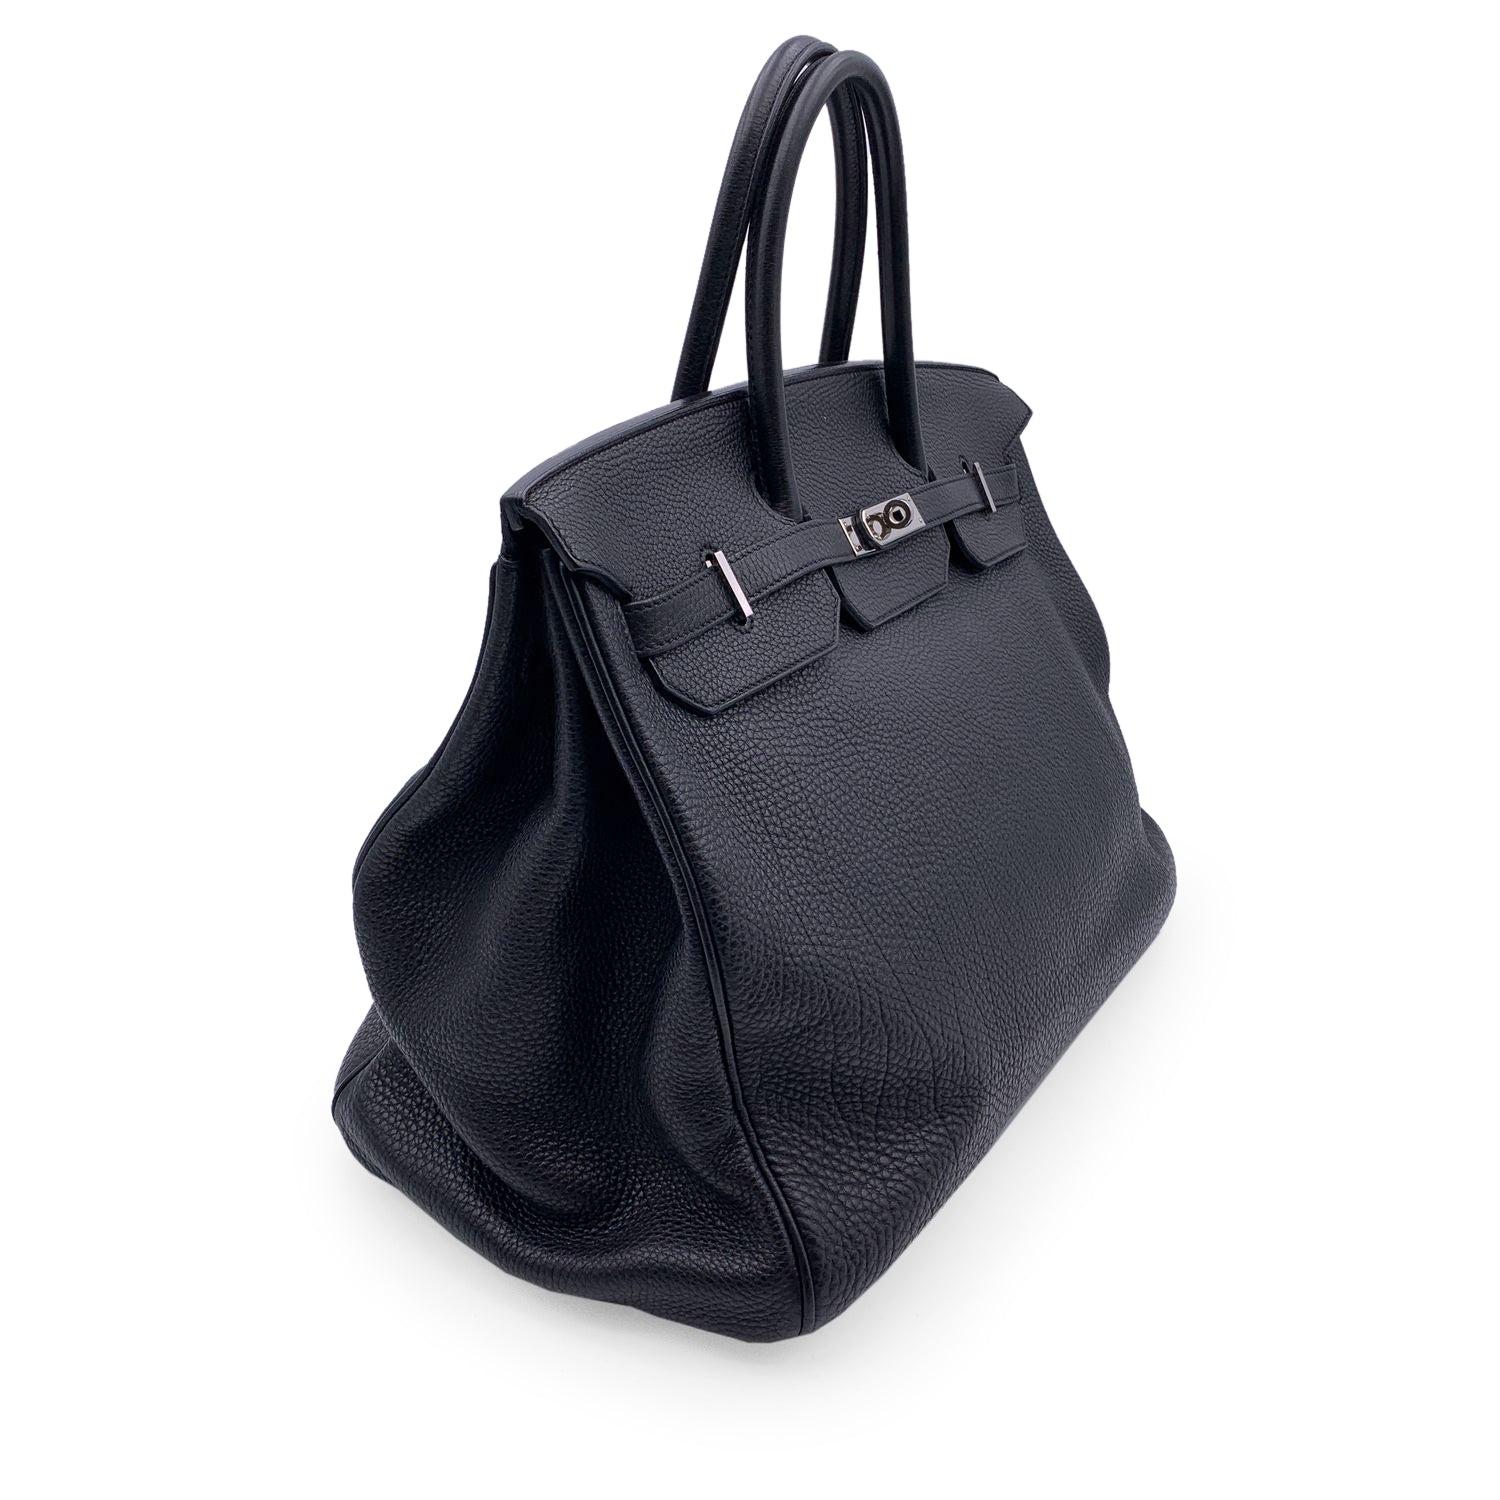 Women's Hermes Black Togo Leather Birkin 40 Top Handle Bag Satchel Handbag